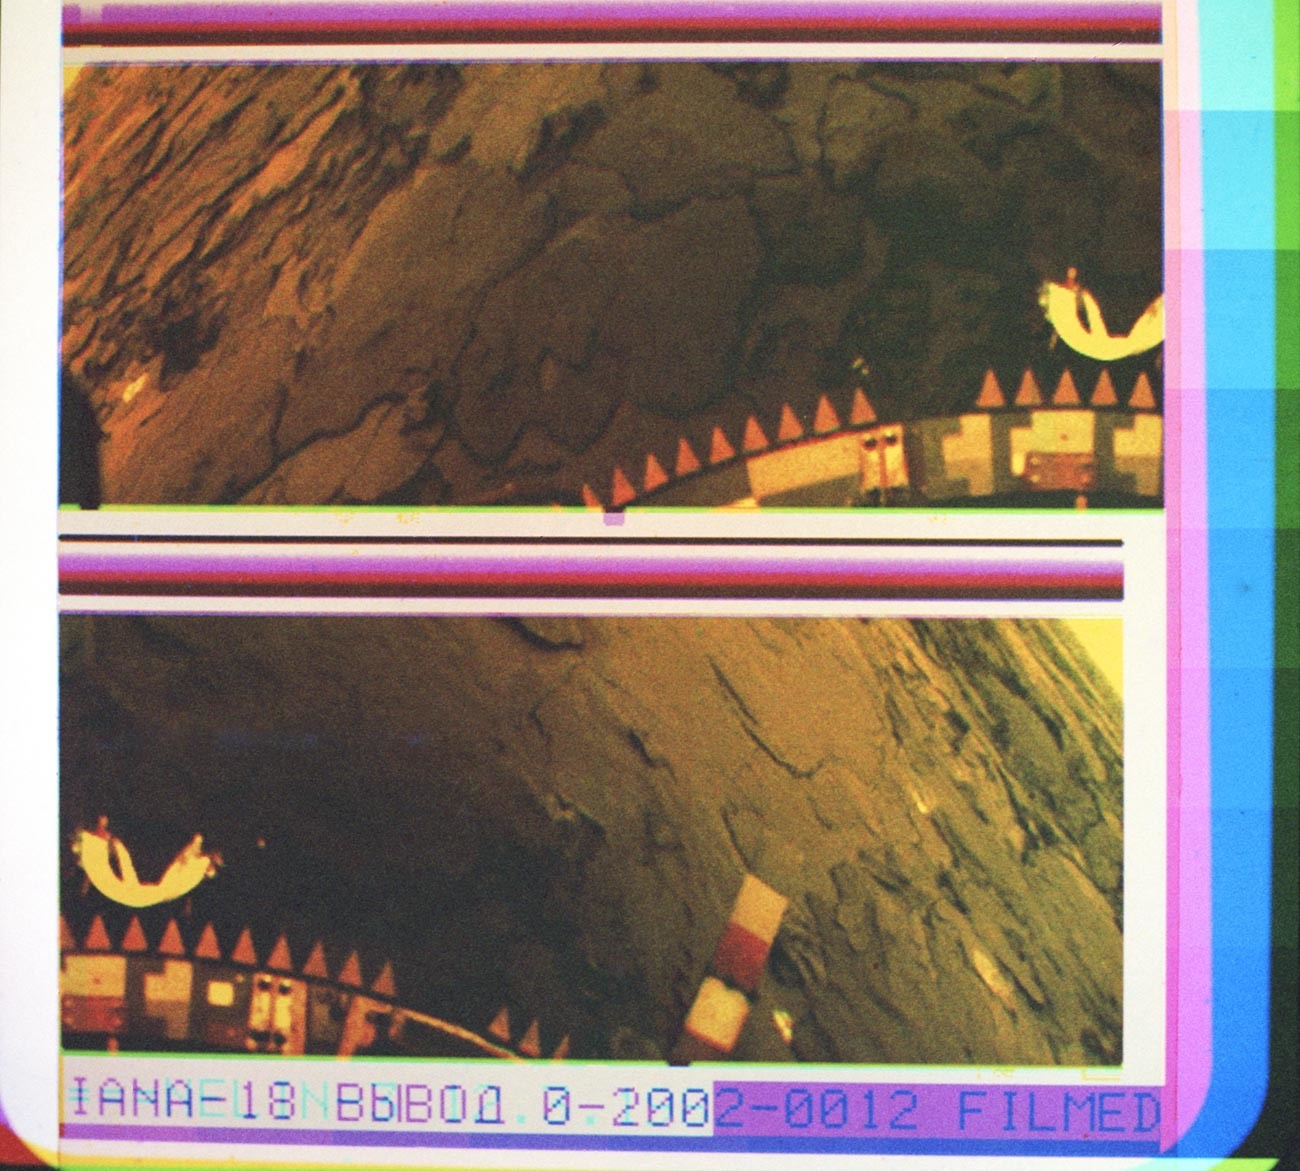 Immagine panoramica a colori della superficie di Venere
